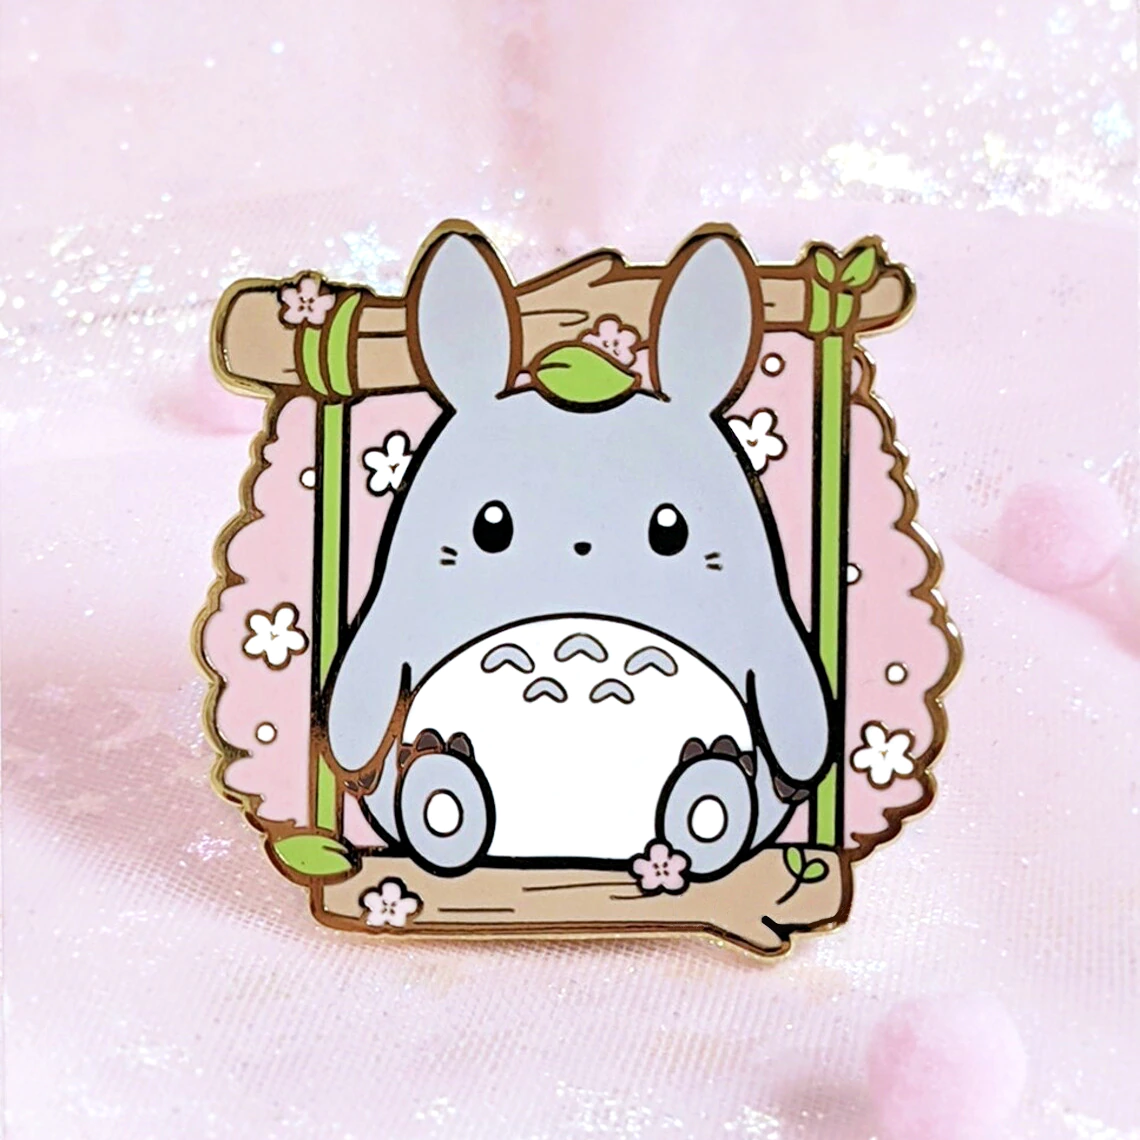 Sana: Totoro, cute happy, Ghibli studio, lovely fantasy, by Hayao Miyazaki